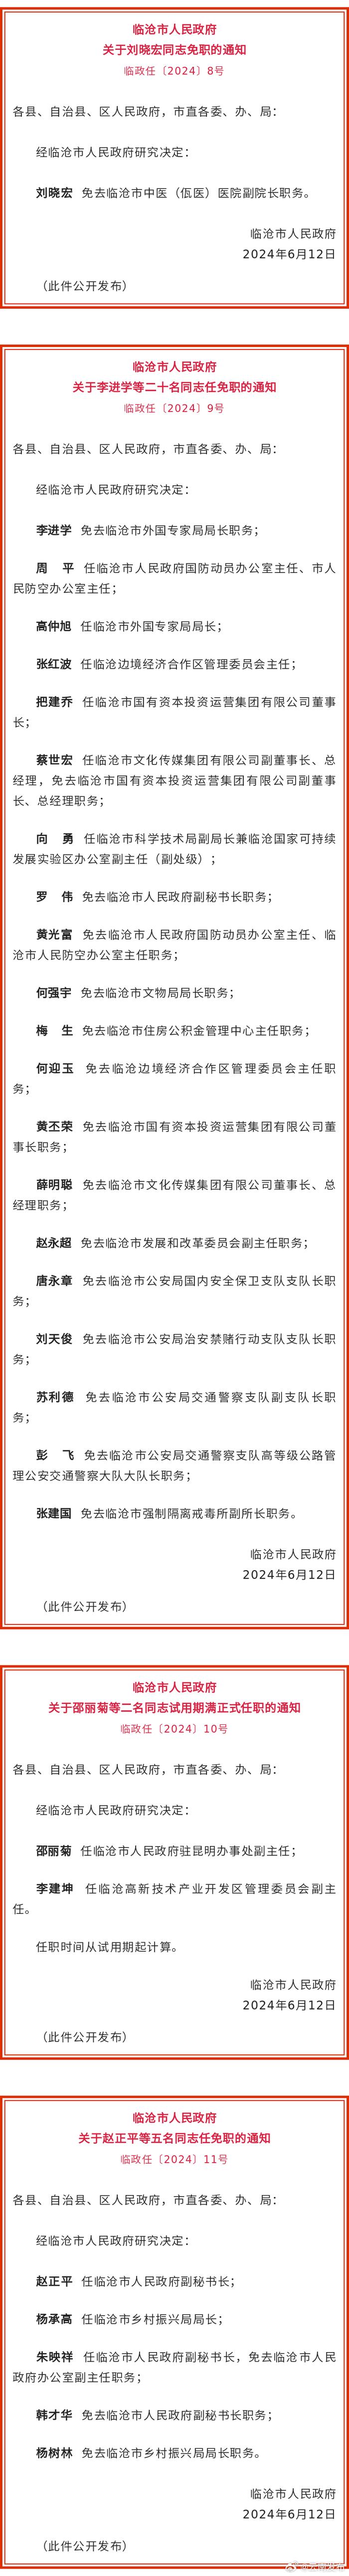 临沧市人民政府发布一批任免职通知